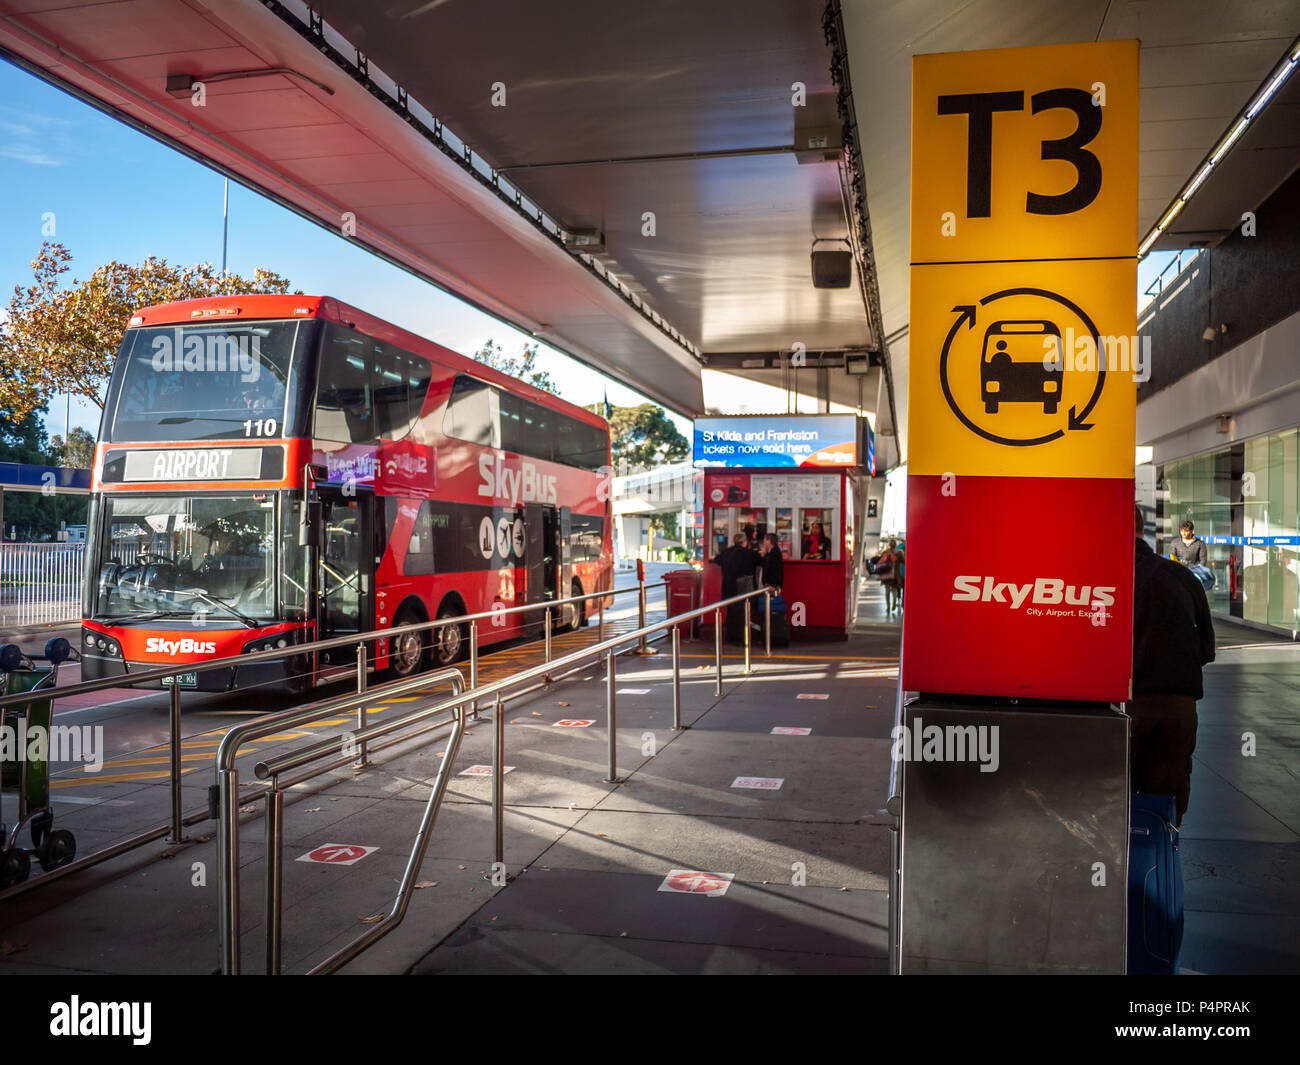 Signe de Skybus arrêter au Terminal 3 de l'aéroport de Tullamarine. Victoria, Melbourne/Australie. Skybus est un service de bus de l'aéroport de Melbourne. Banque D'Images